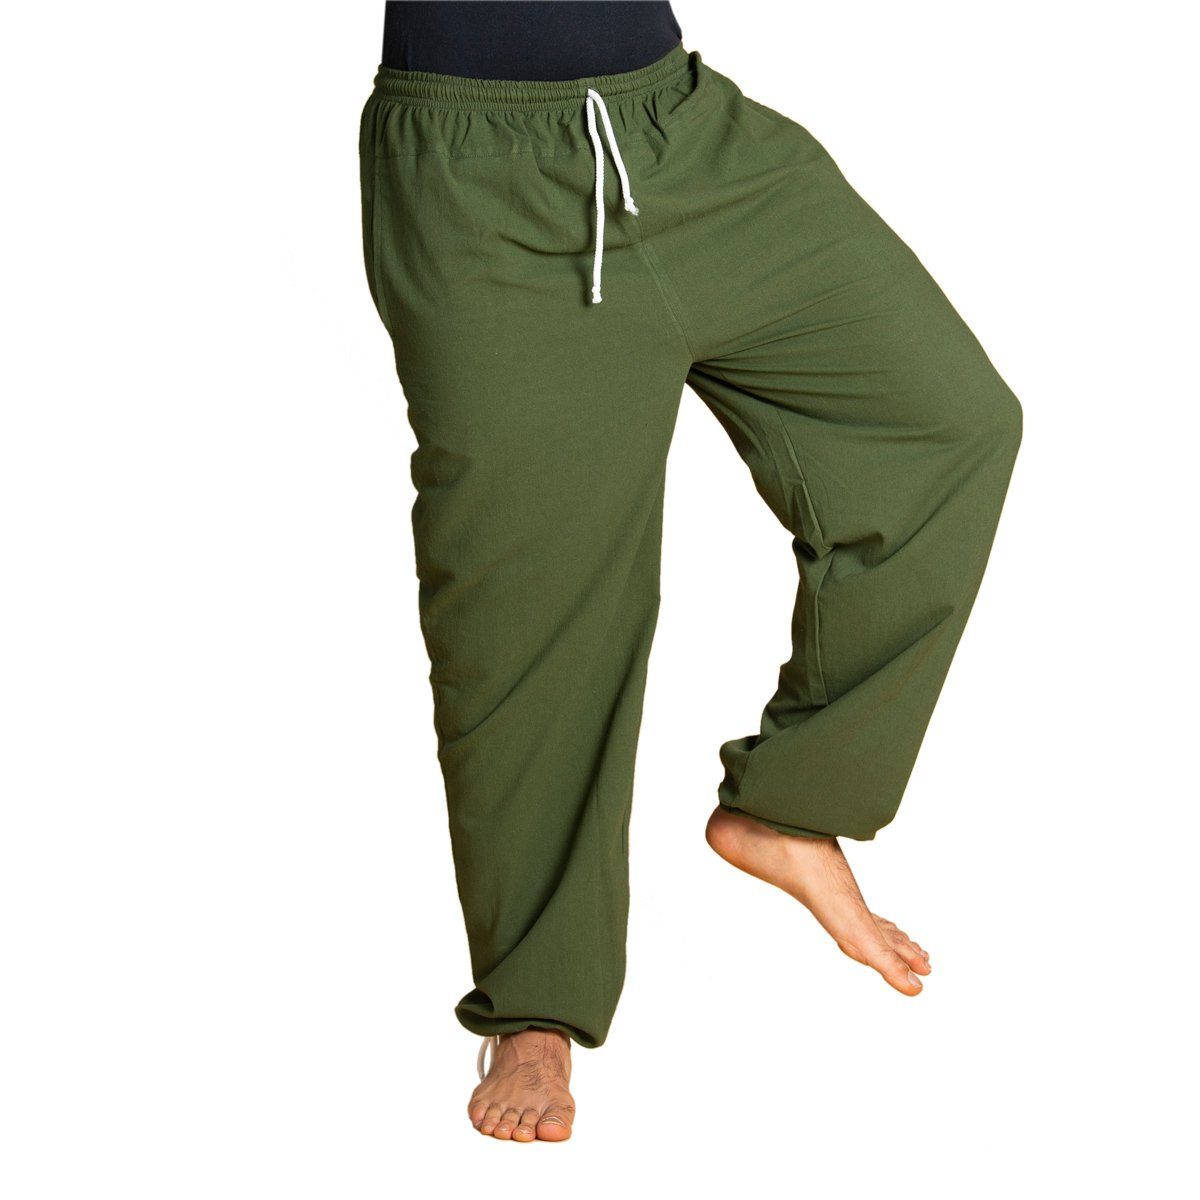 PANASIAM Wellnesshose E-Pants leichte Unisex Bundhose aus weicher Baumwolle für Damen und Herren Freizeithose mit Tunnelzug Relaxhose bequeme Sommerhose dunkel grün